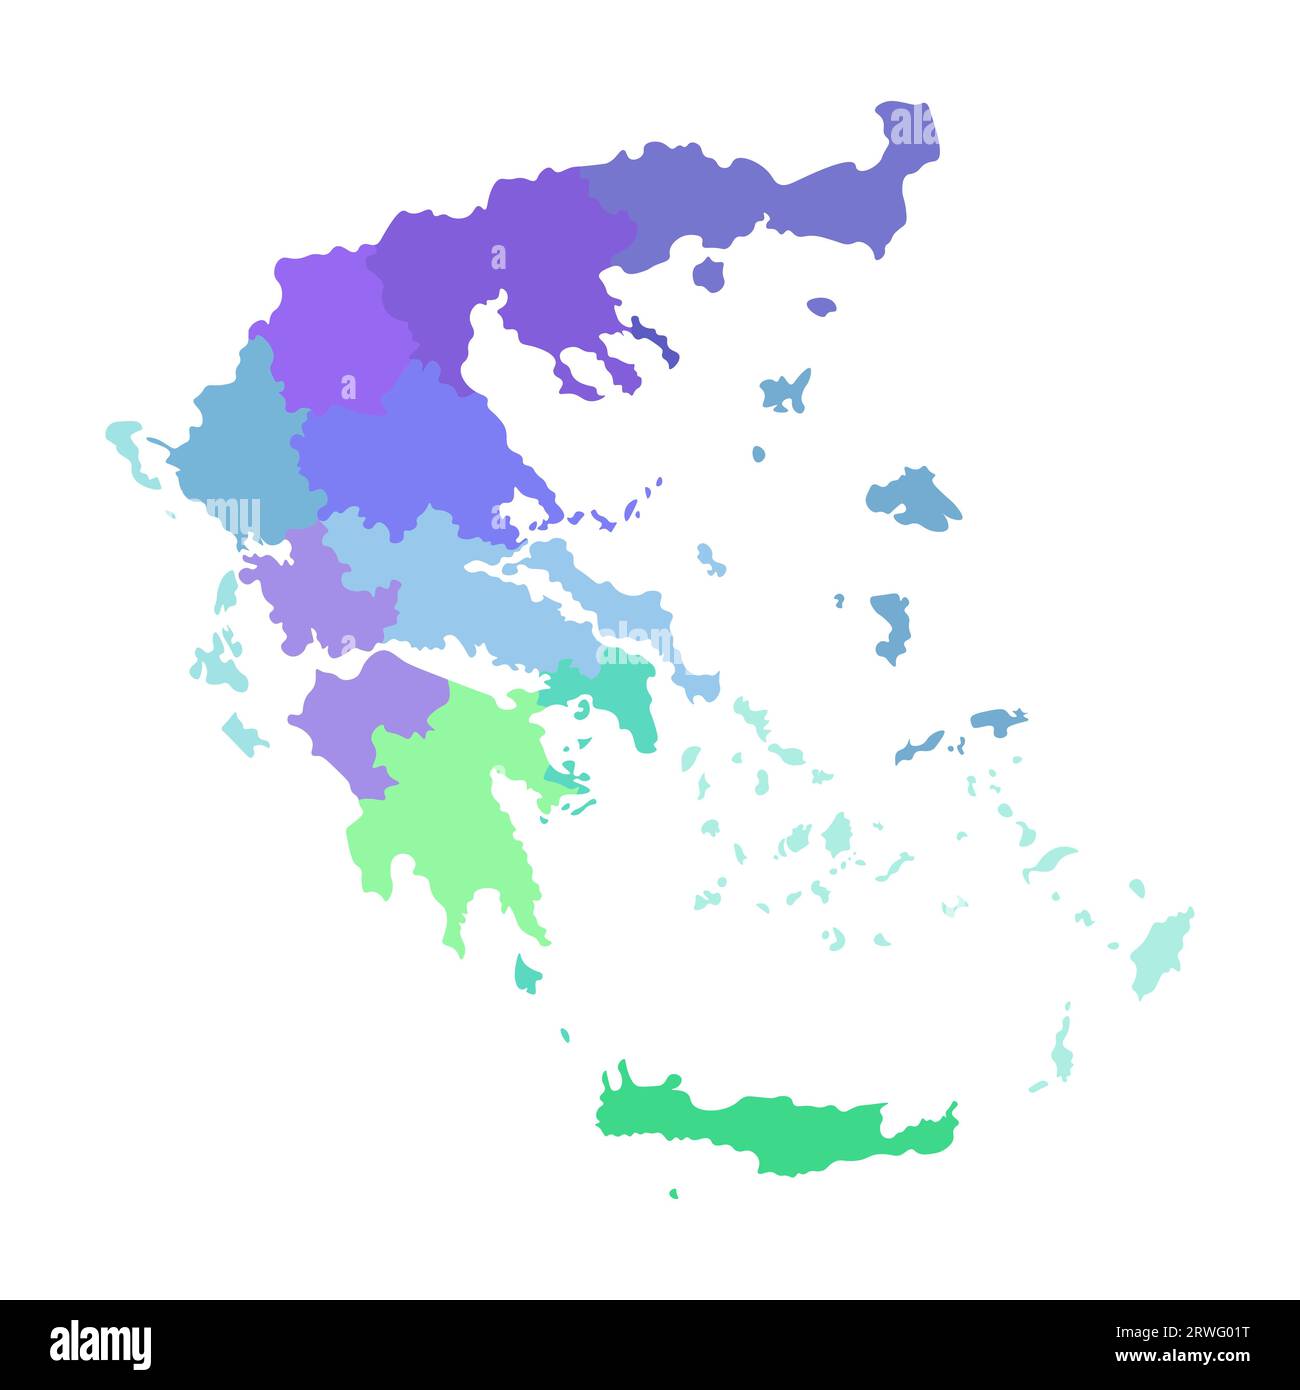 Illustrazione vettoriale isolata della mappa amministrativa semplificata della Grecia. Confini delle regioni. Silhouette multicolore. Illustrazione Vettoriale